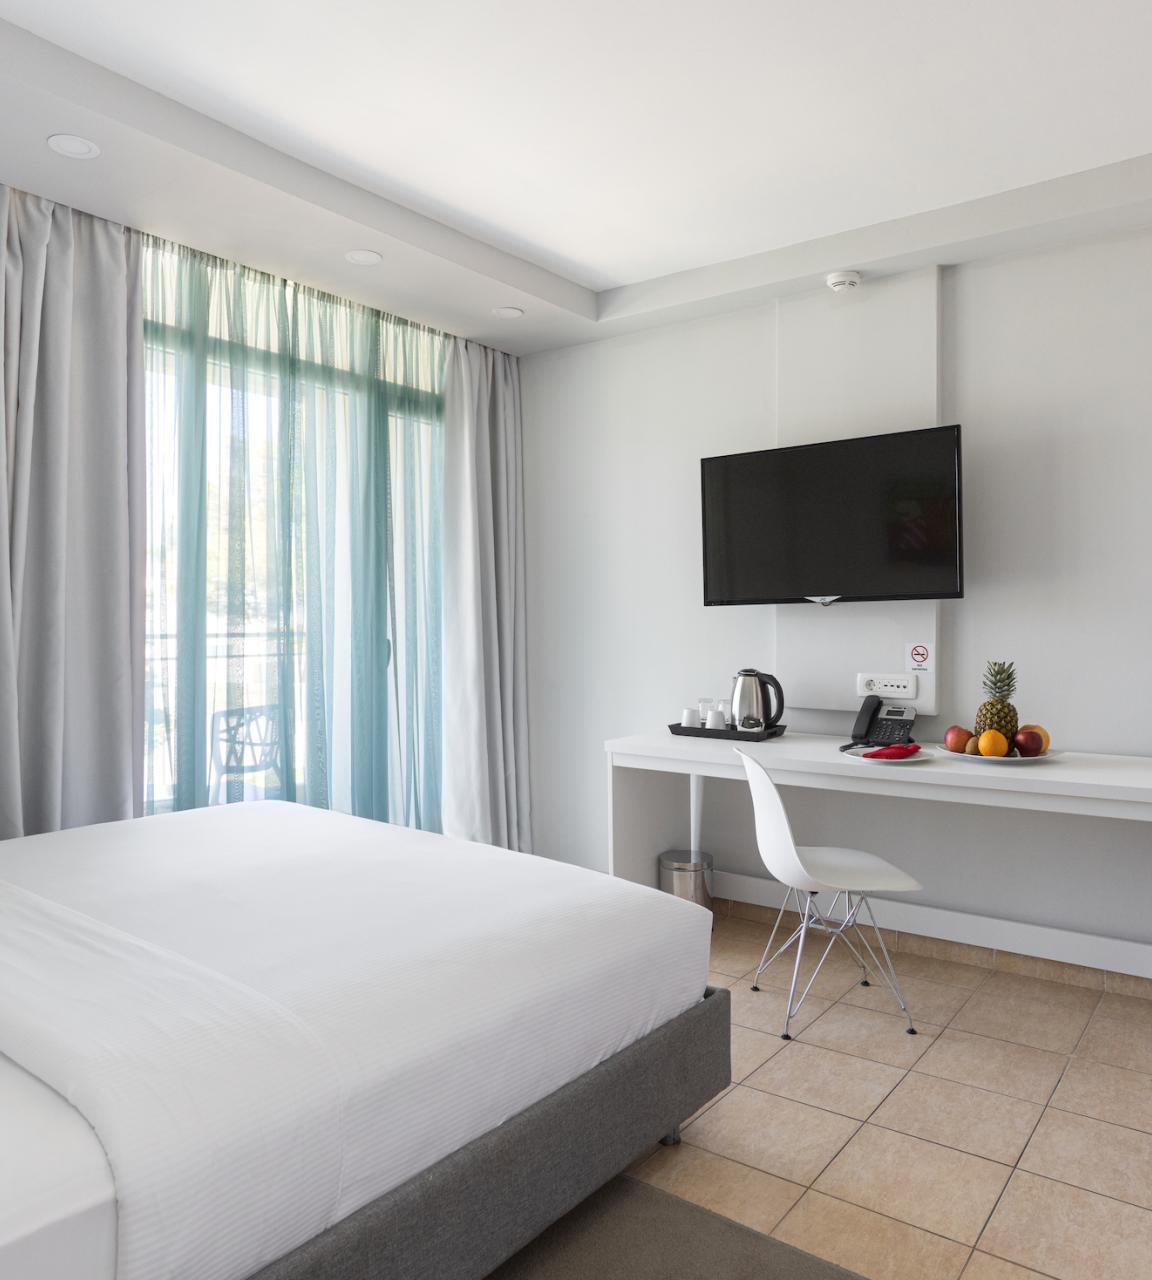 Azul Beach Resort Montenegro - Two bedroom swim-up suite